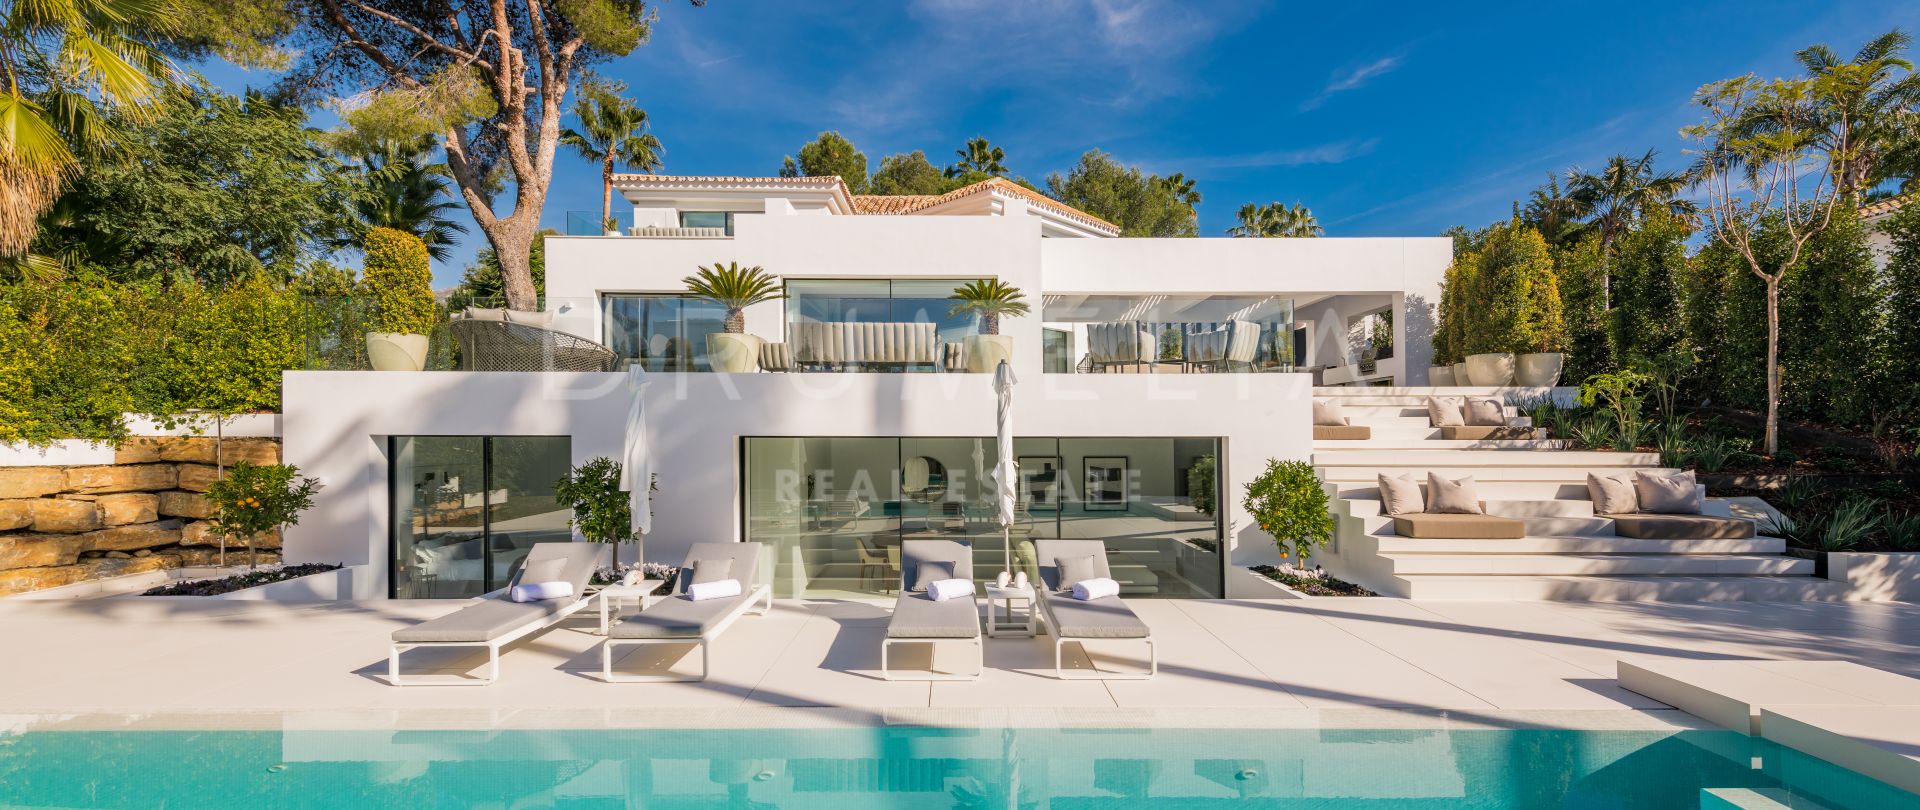 Casa Laranja - Fantastisk lyxvilla med modern design i Nueva Andalucía, Marbella